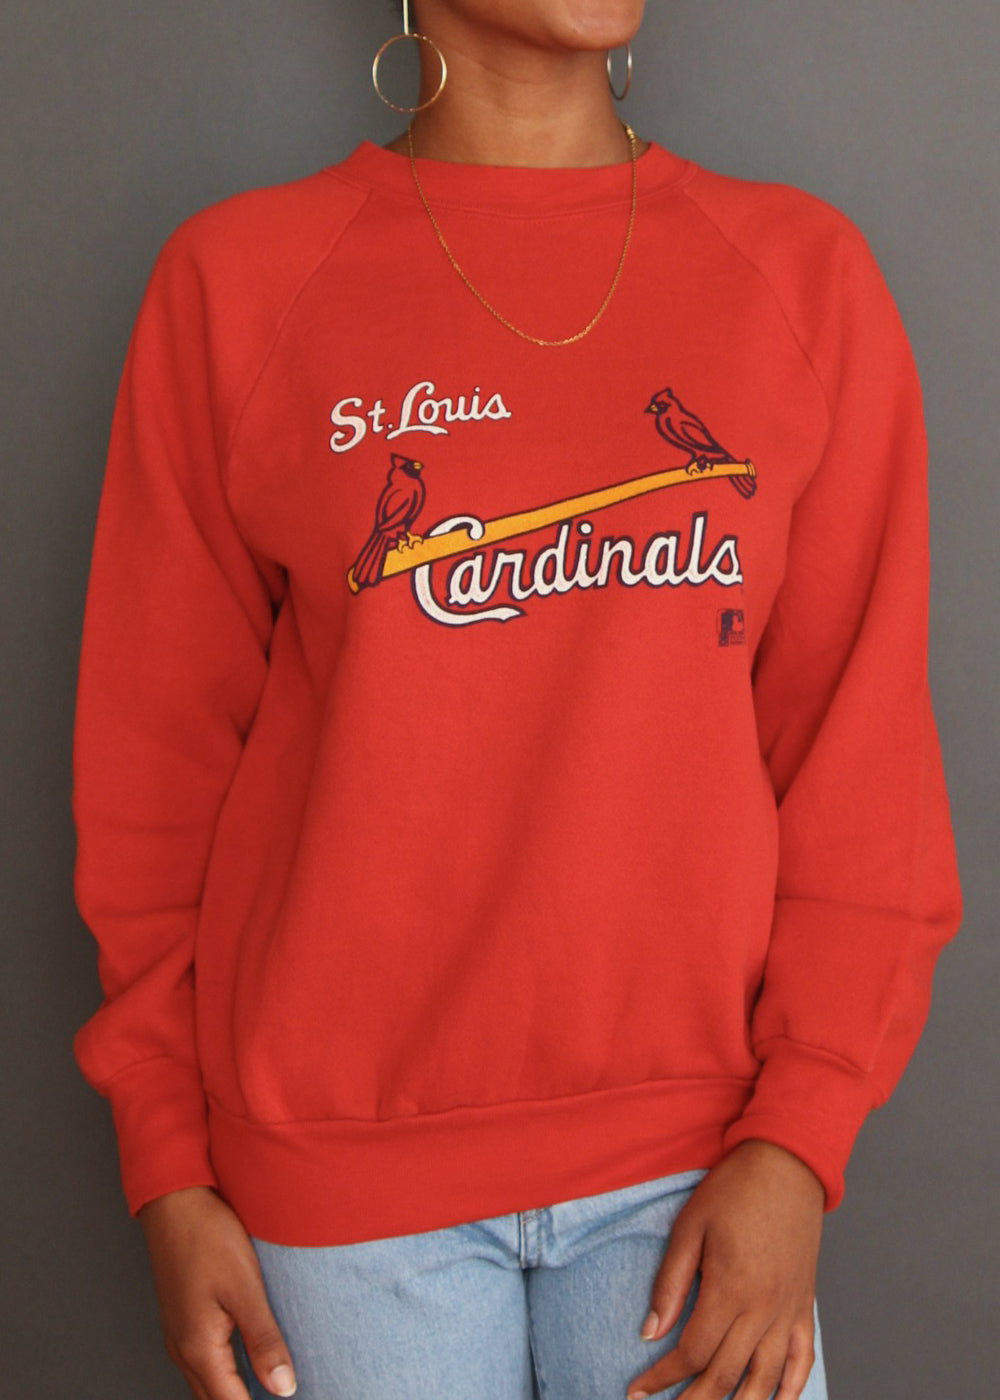 Vintage St. Louis Cardinals Sweatshirt L 